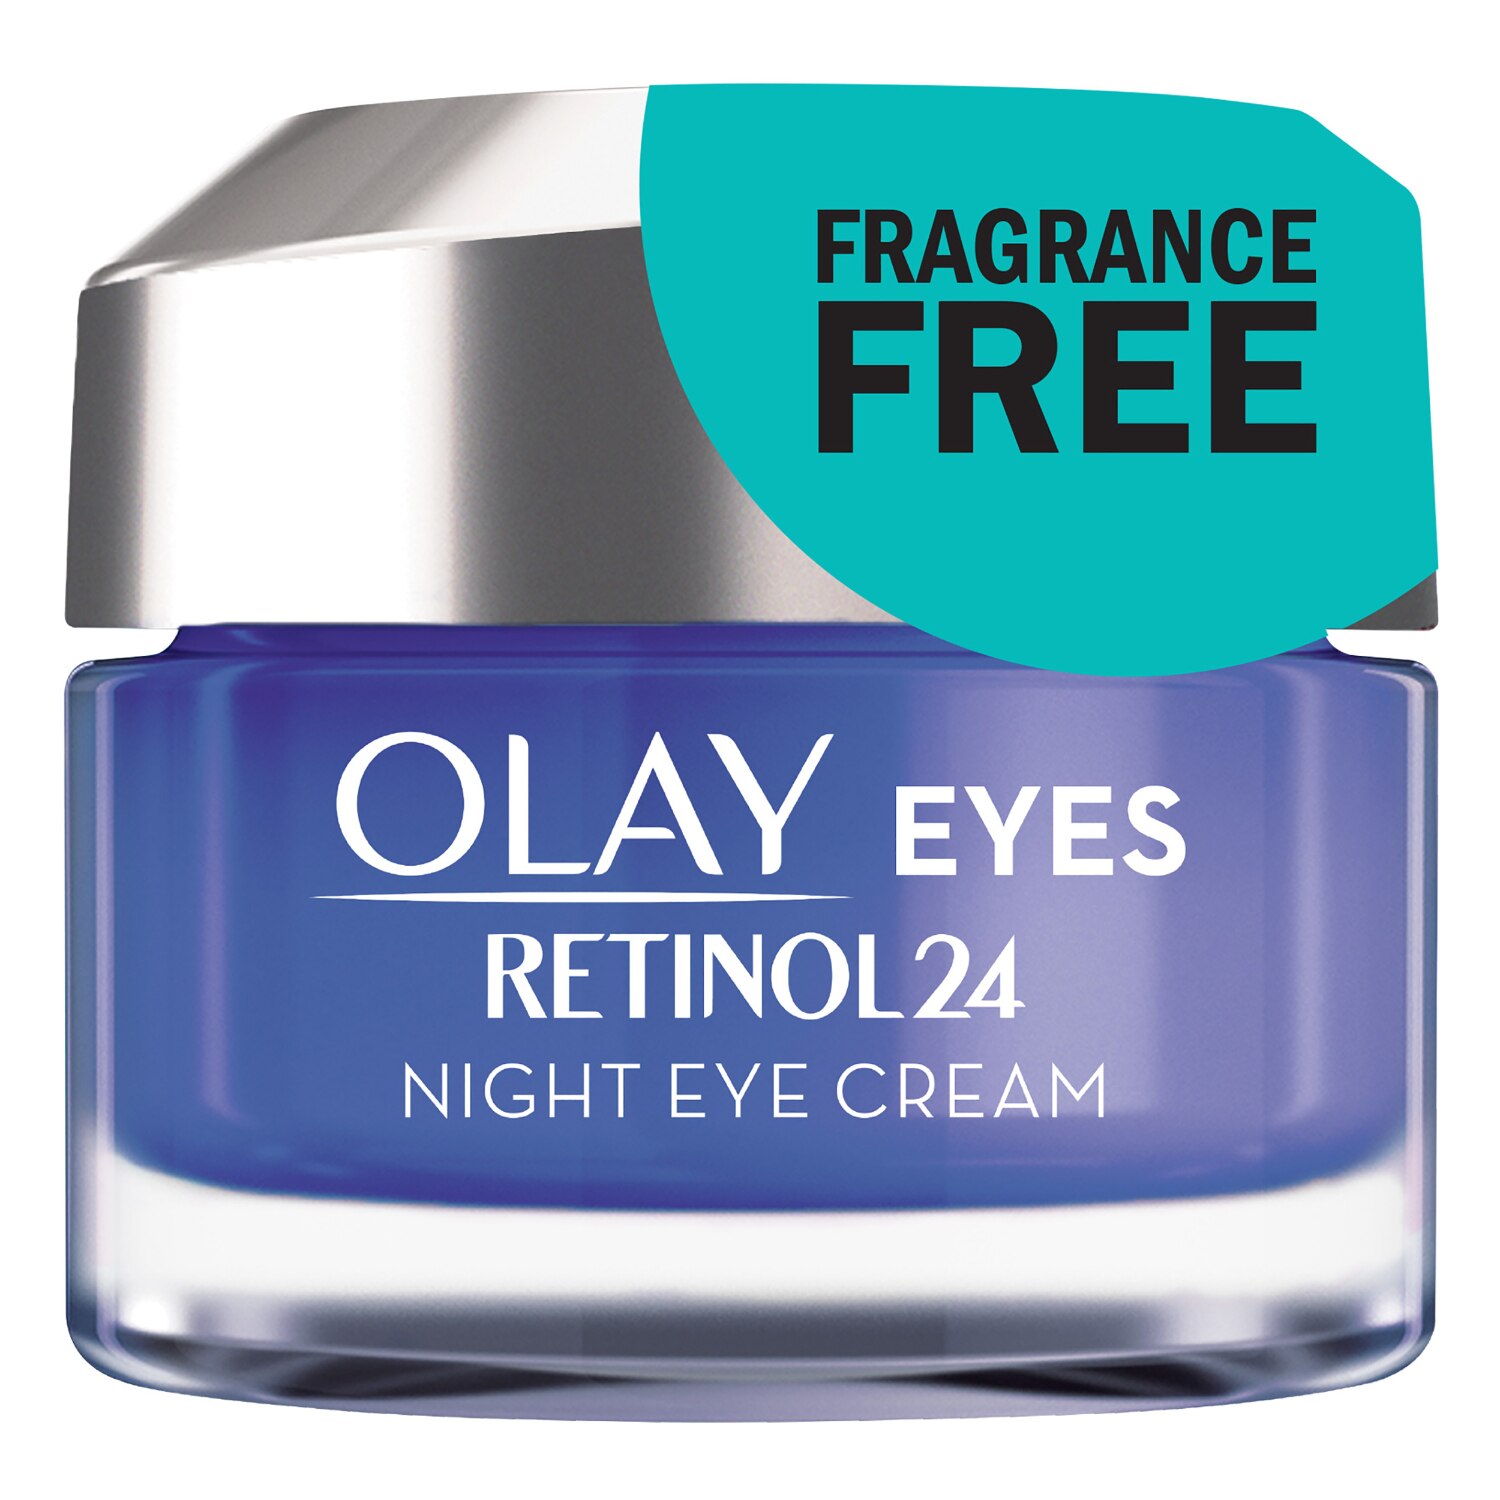 Olay Regenerist - Crema para ojos con retinol 24, uso nocturno, 0.5 oz